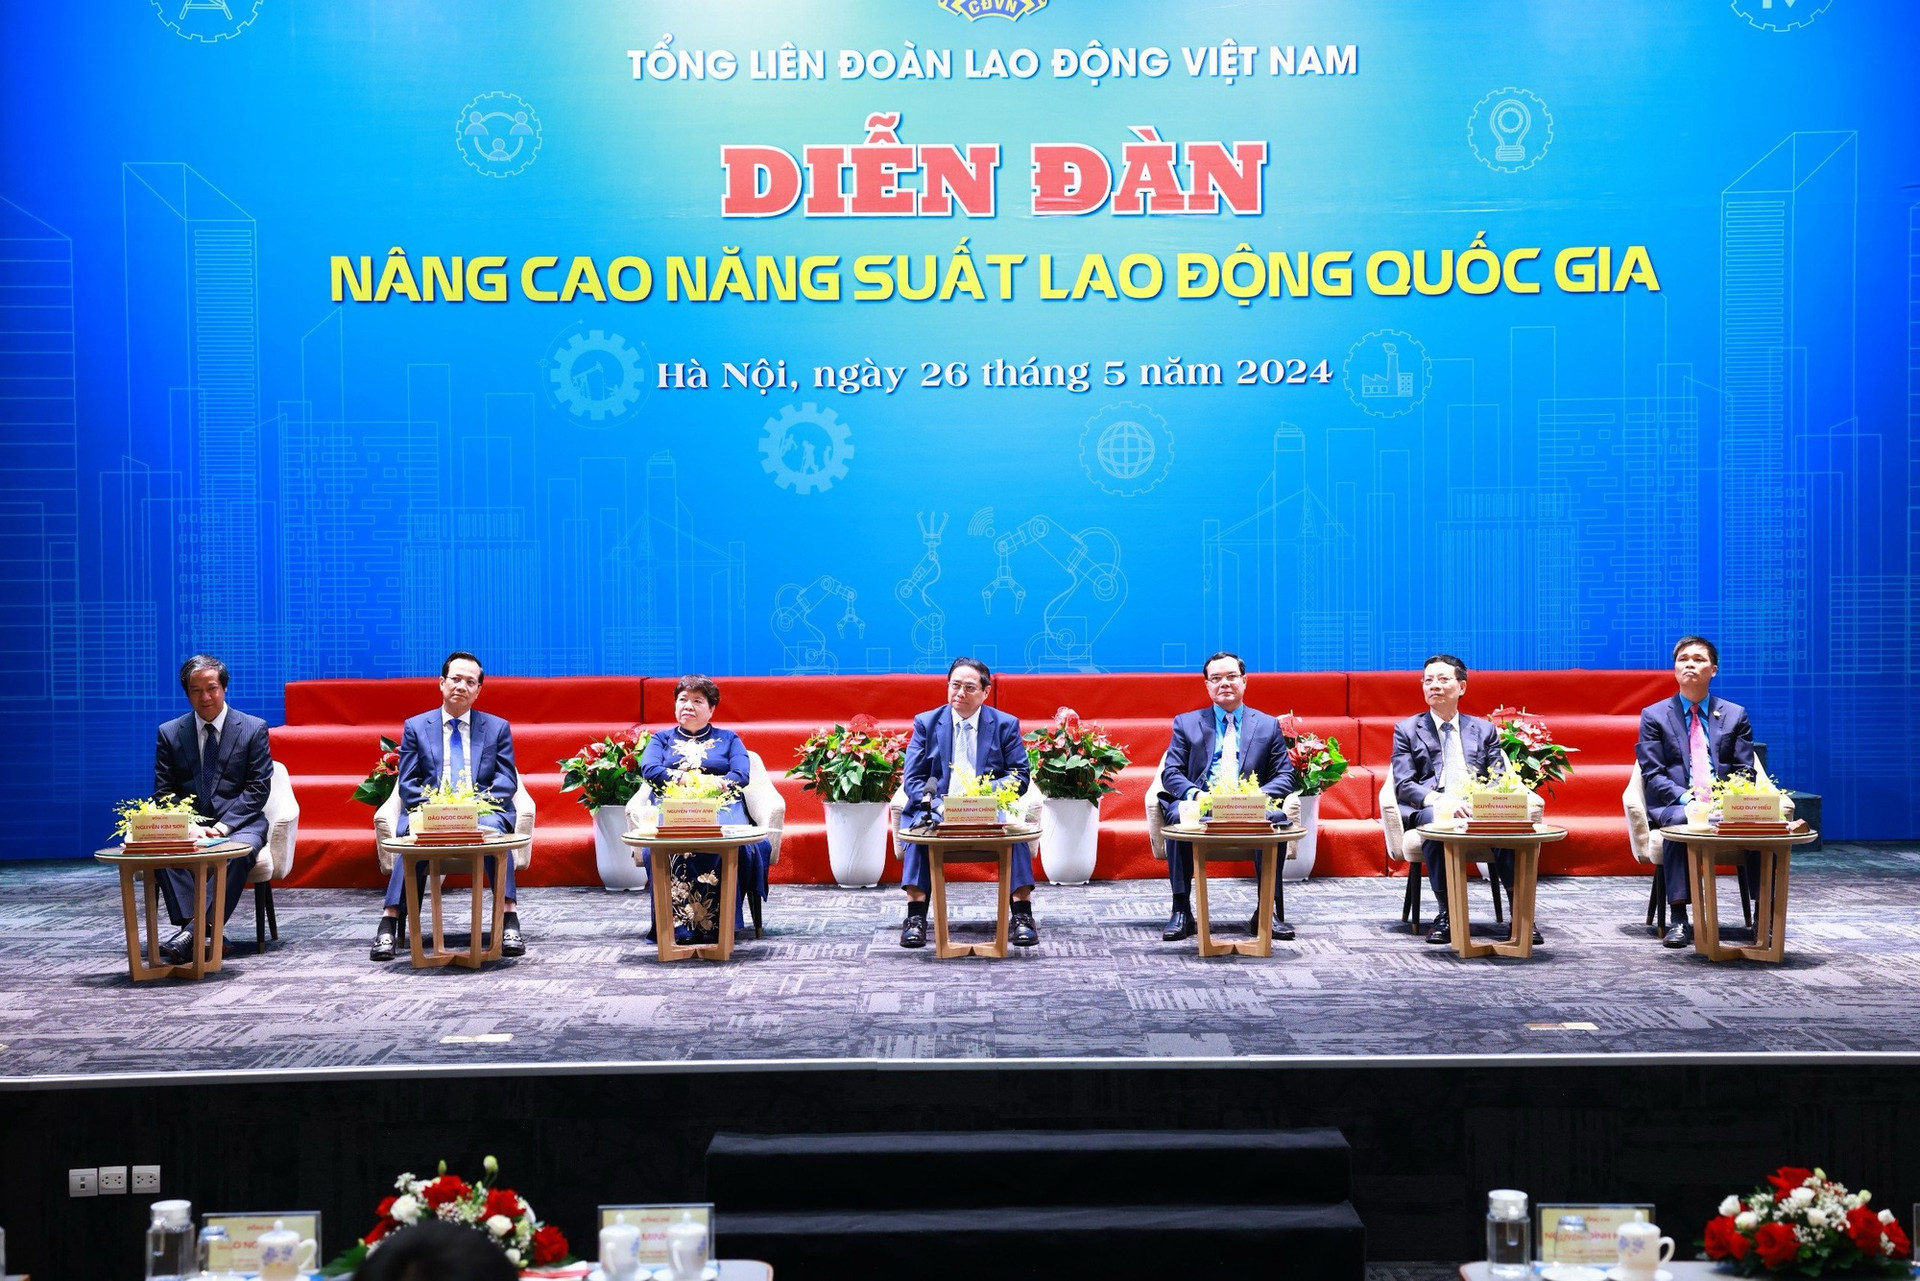 Thủ tướng Phạm Minh Chính: '3 đẩy mạnh, 3 tiên phong, 3 bứt phá' để góp phần thúc đẩy tăng năng suất lao động- Ảnh 2.